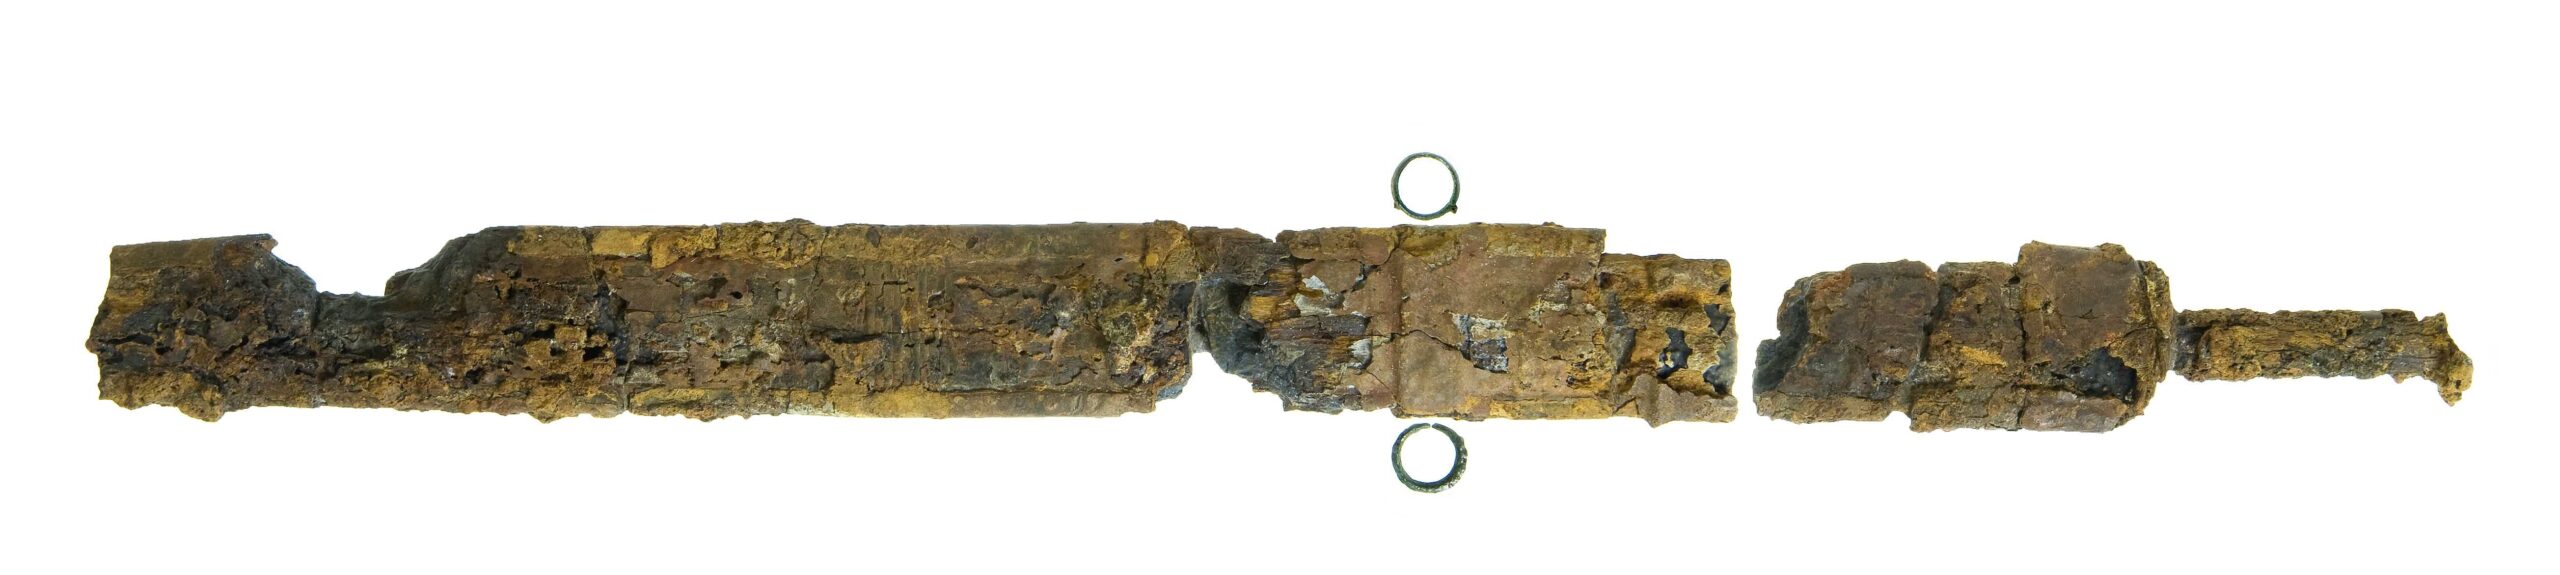 חרב בת 2,000 שנה